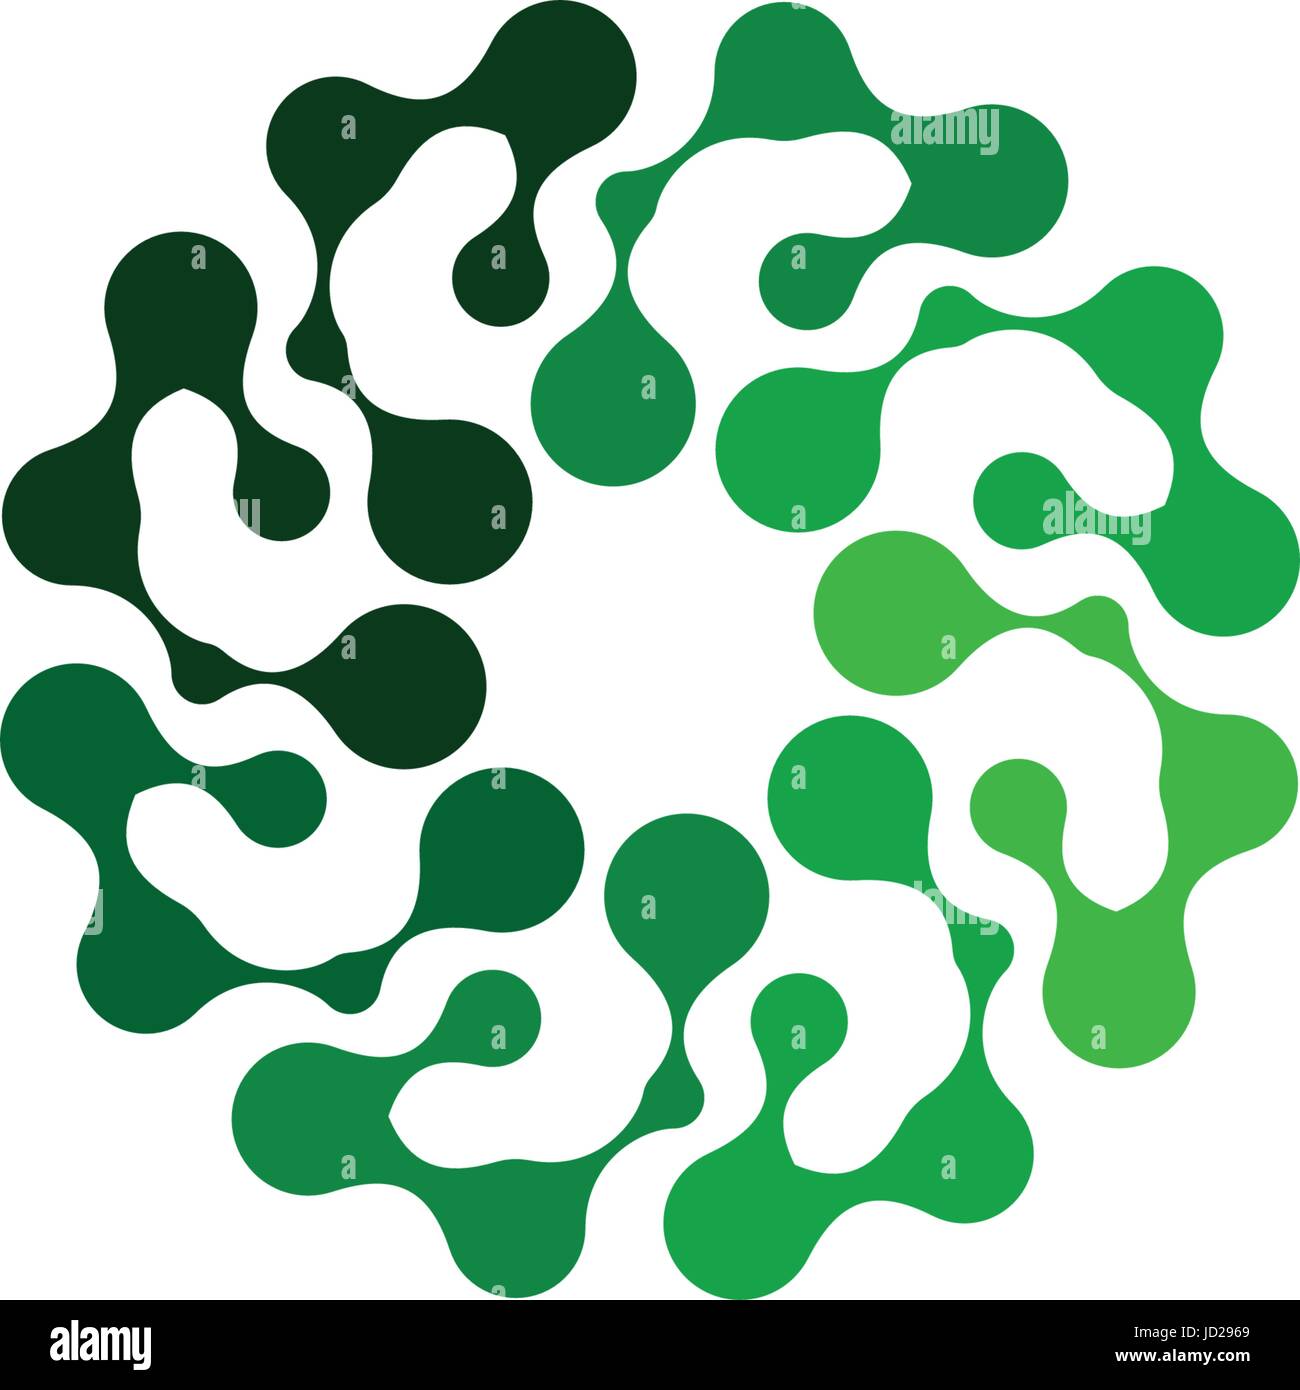 Résumé isolé forme ronde de couleur verte sur fond blanc, le logo de télévision simple fleur stylisée logo vector illustration. Illustration de Vecteur